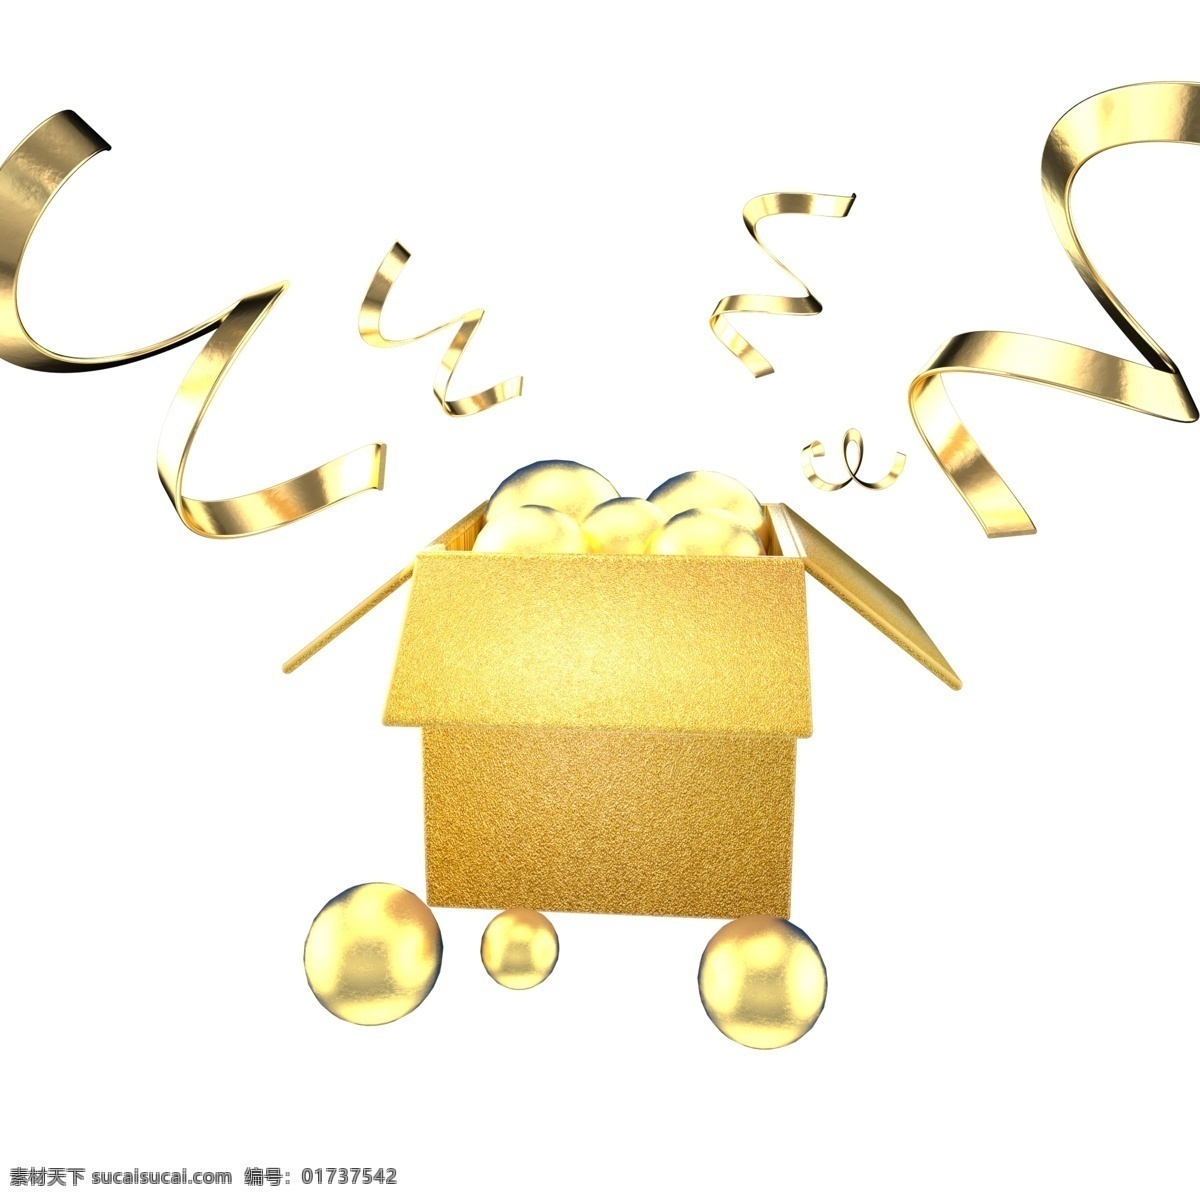 金色 节日 促销 礼盒 c4d 金色丝带 金色点缀 金色漂浮物 节日促销 大气金色 黄金 电商促销 天猫 淘宝 五角星 金色礼盒 节日礼盒